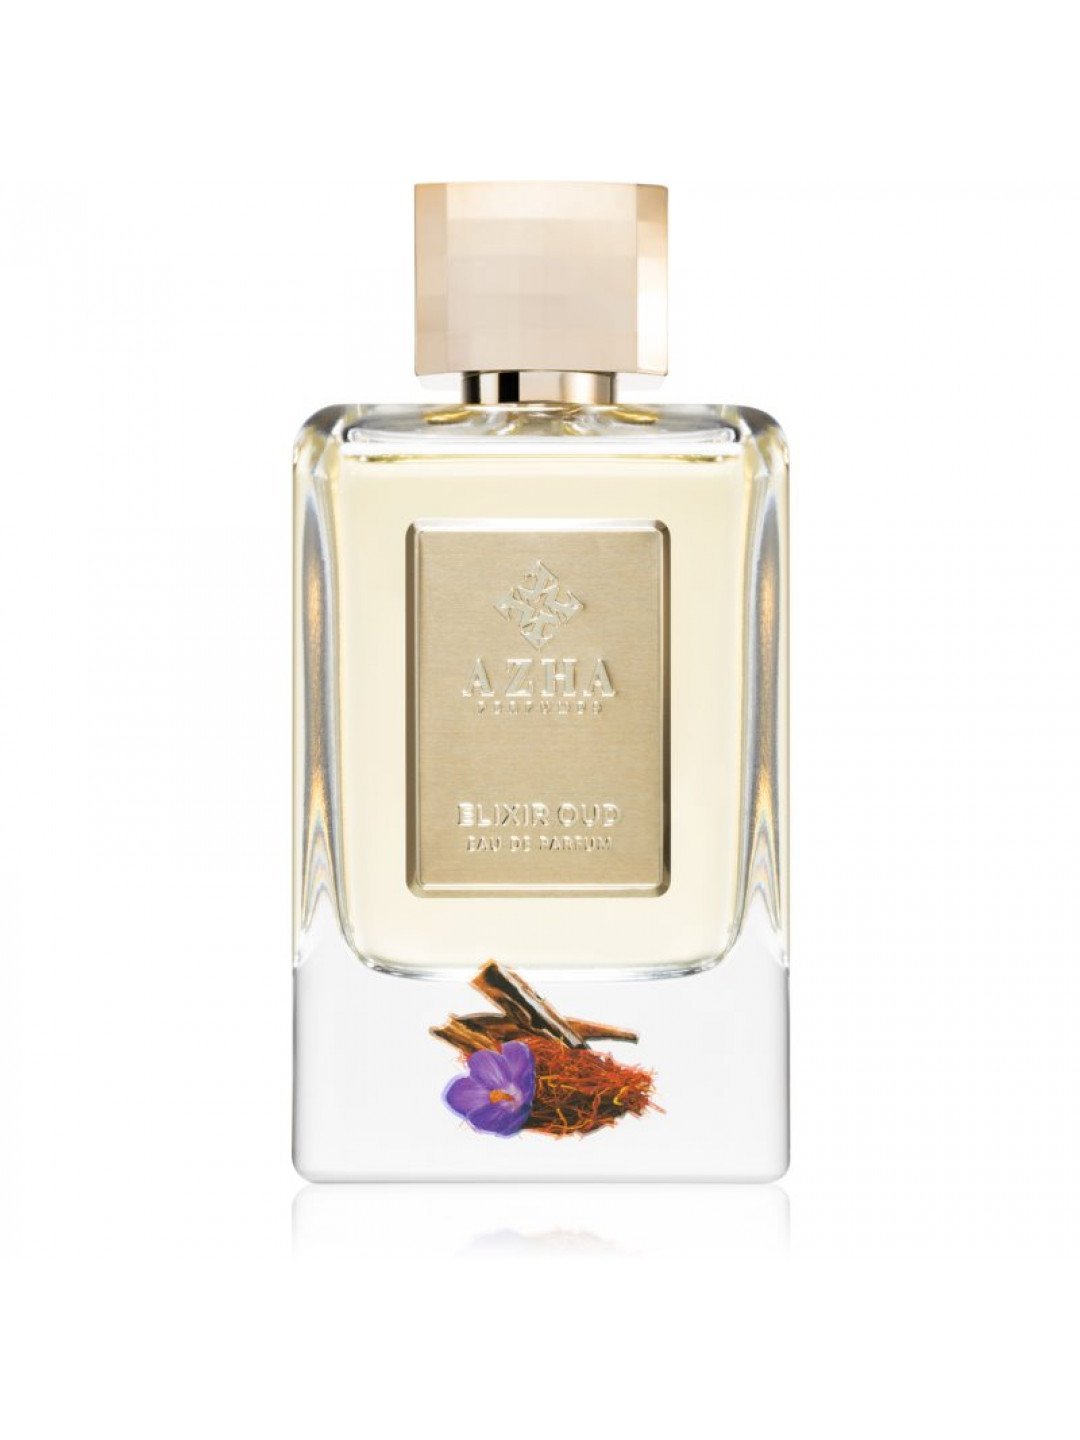 AZHA Perfumes Elixir Oud parfémovaná voda unisex 100 ml